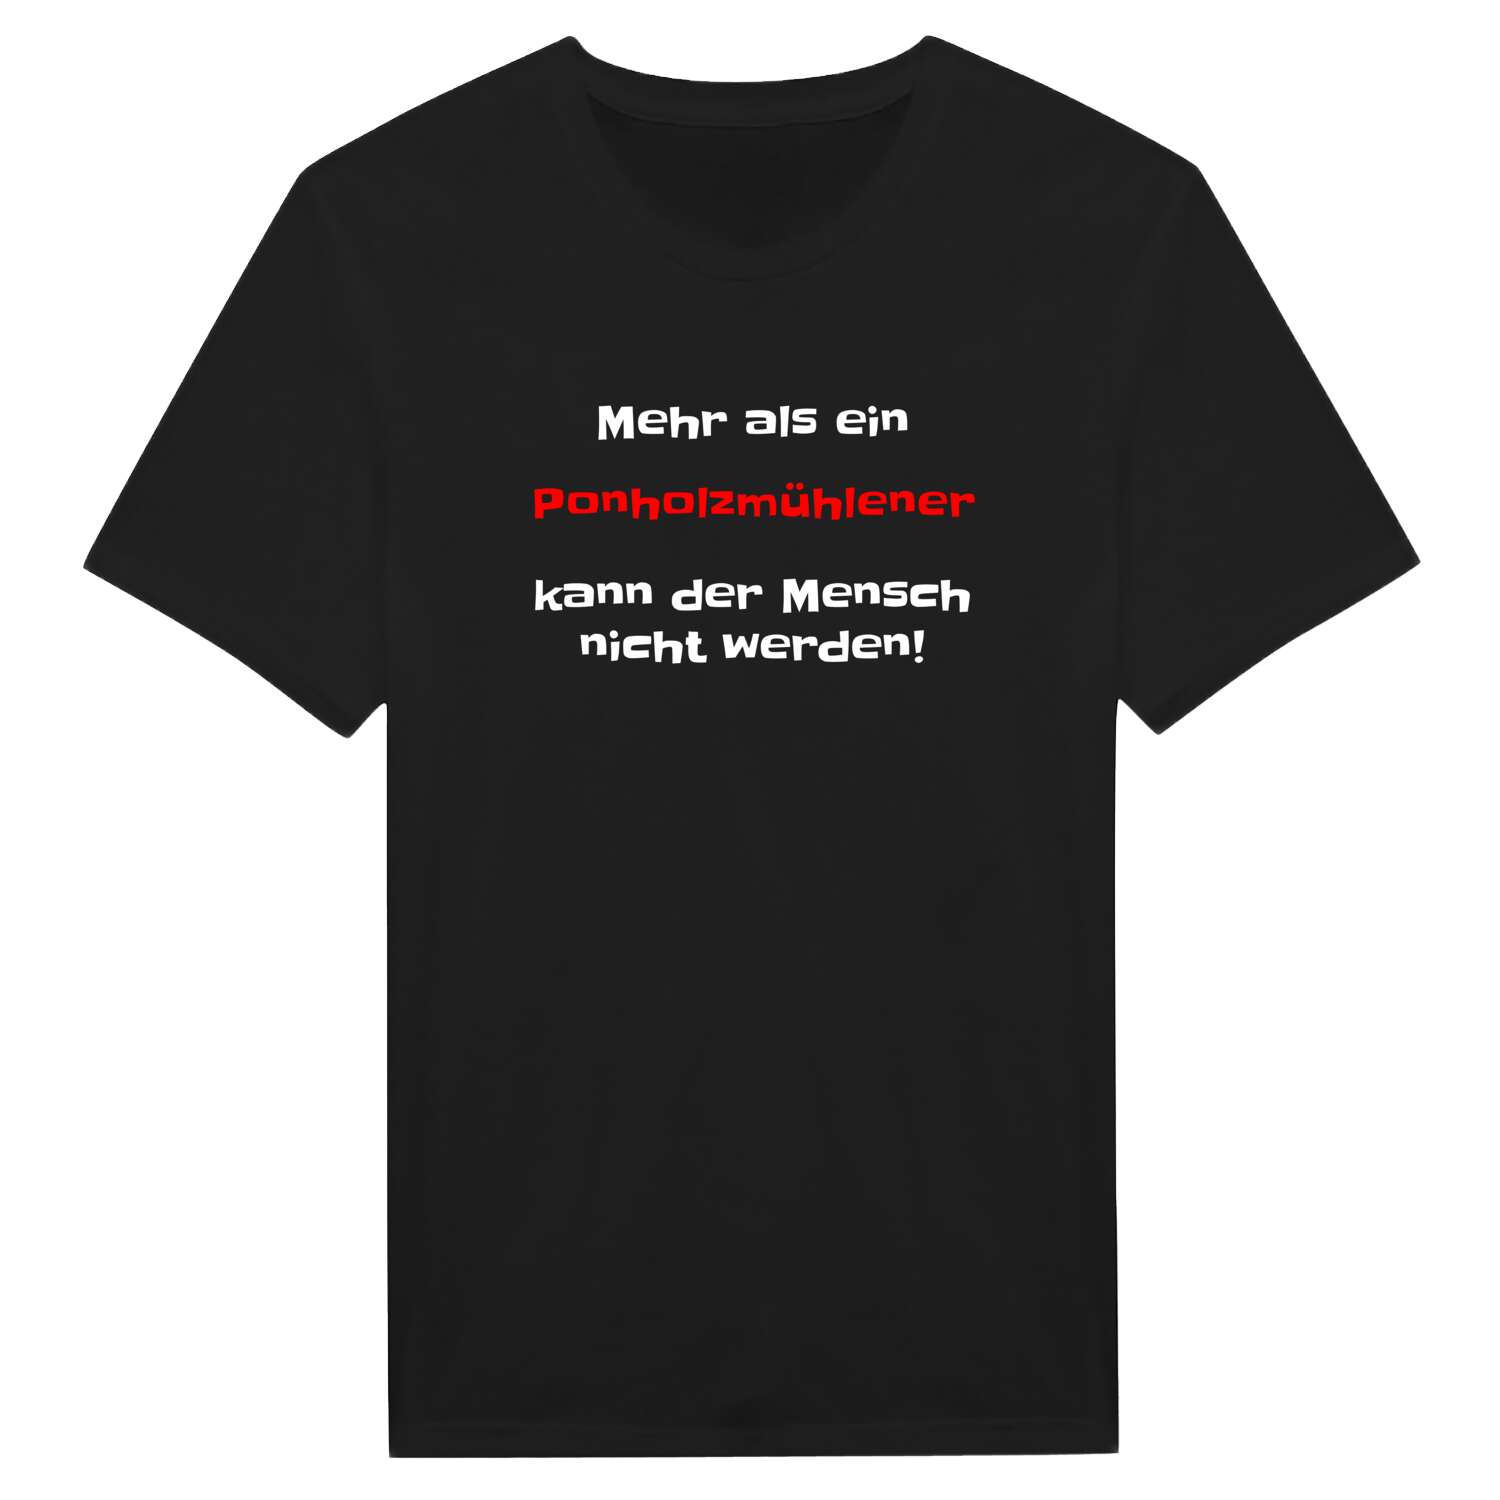 Ponholzmühle T-Shirt »Mehr als ein«